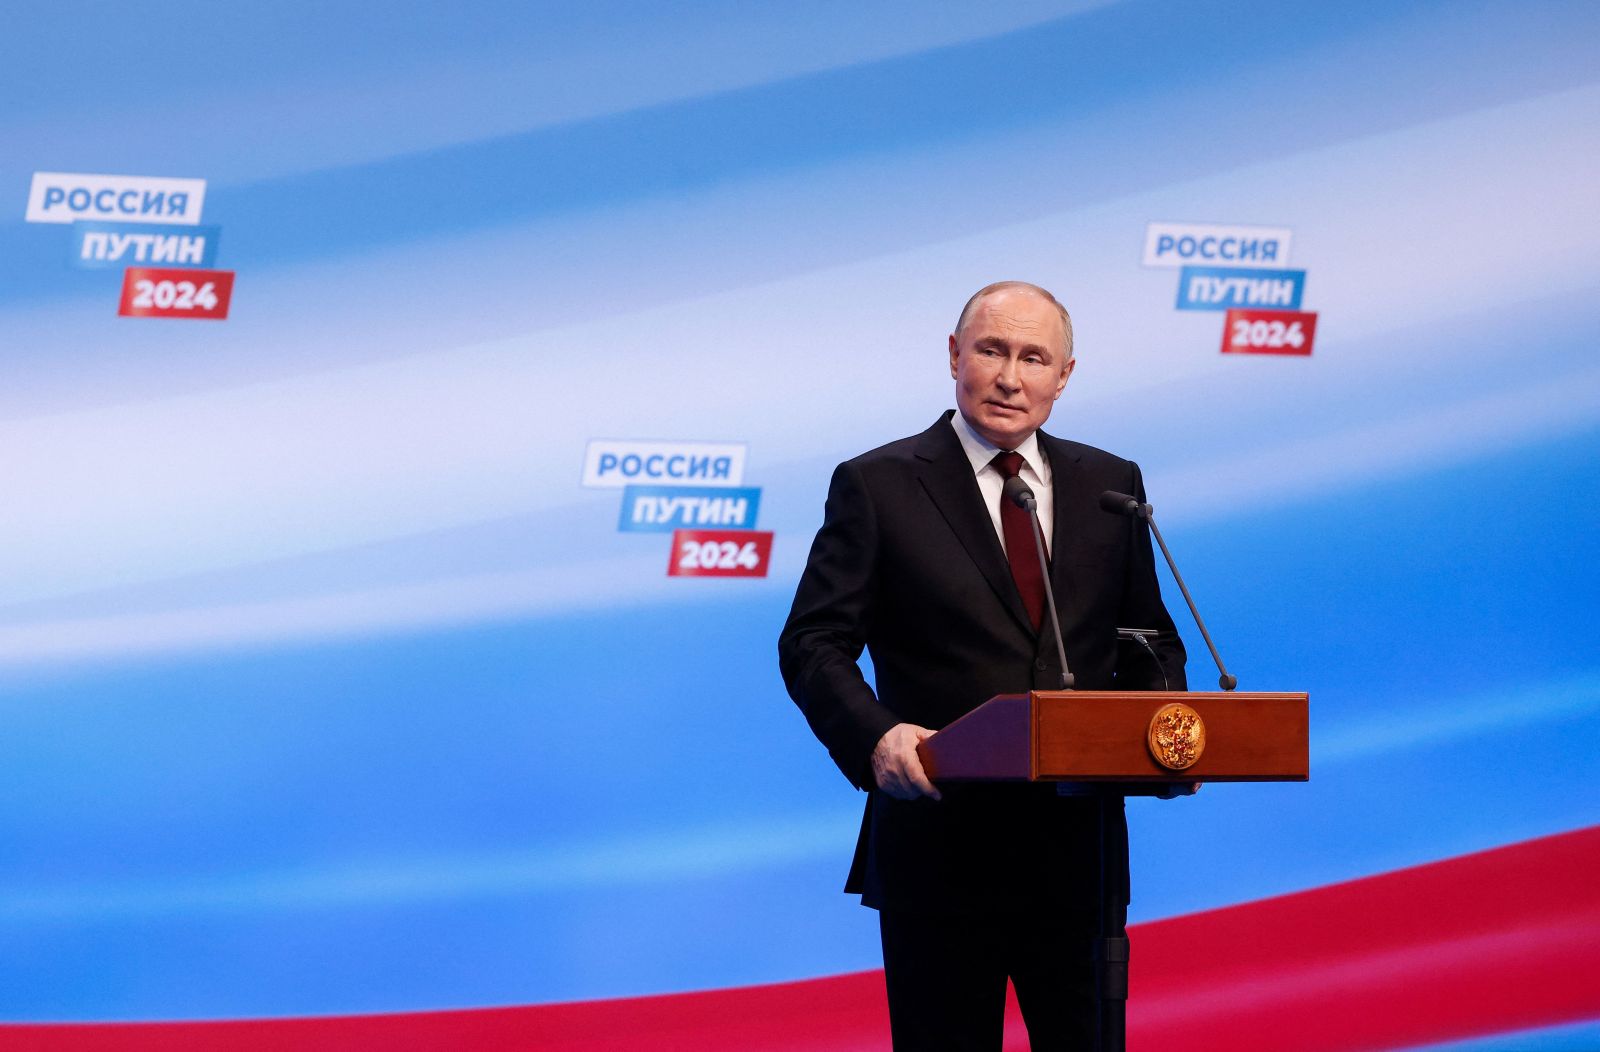 Đương kim Tổng thống Nga V.Putin vẫn nắm ưu thế trong cuộc bầu cử 2024 